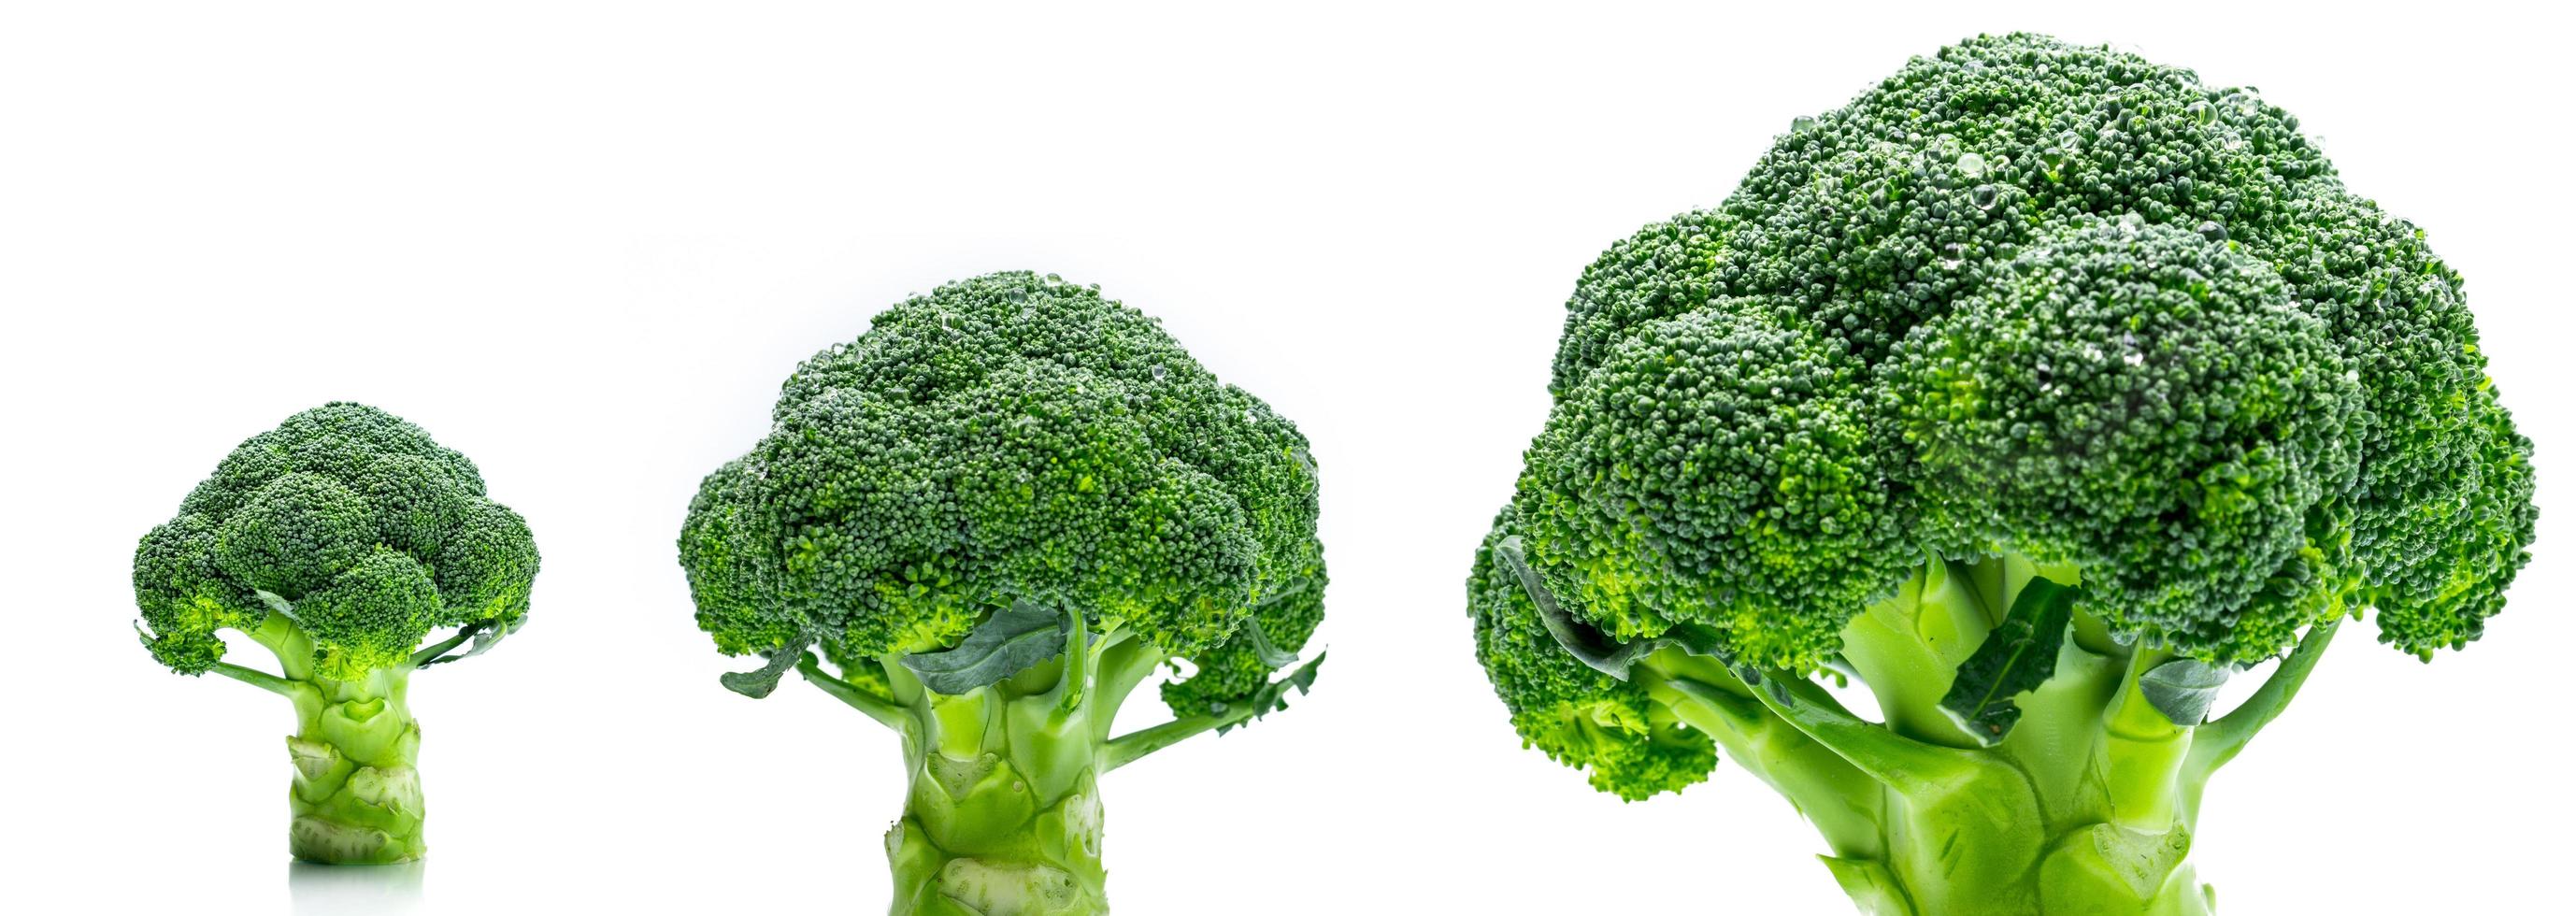 set van groene broccoli brassica oleracea groenten natuurlijke bron van betacaroteen, vitamine c, vitamine k, vezelvoedsel, foliumzuur. verse broccoli kool geïsoleerd op een witte achtergrond. foto